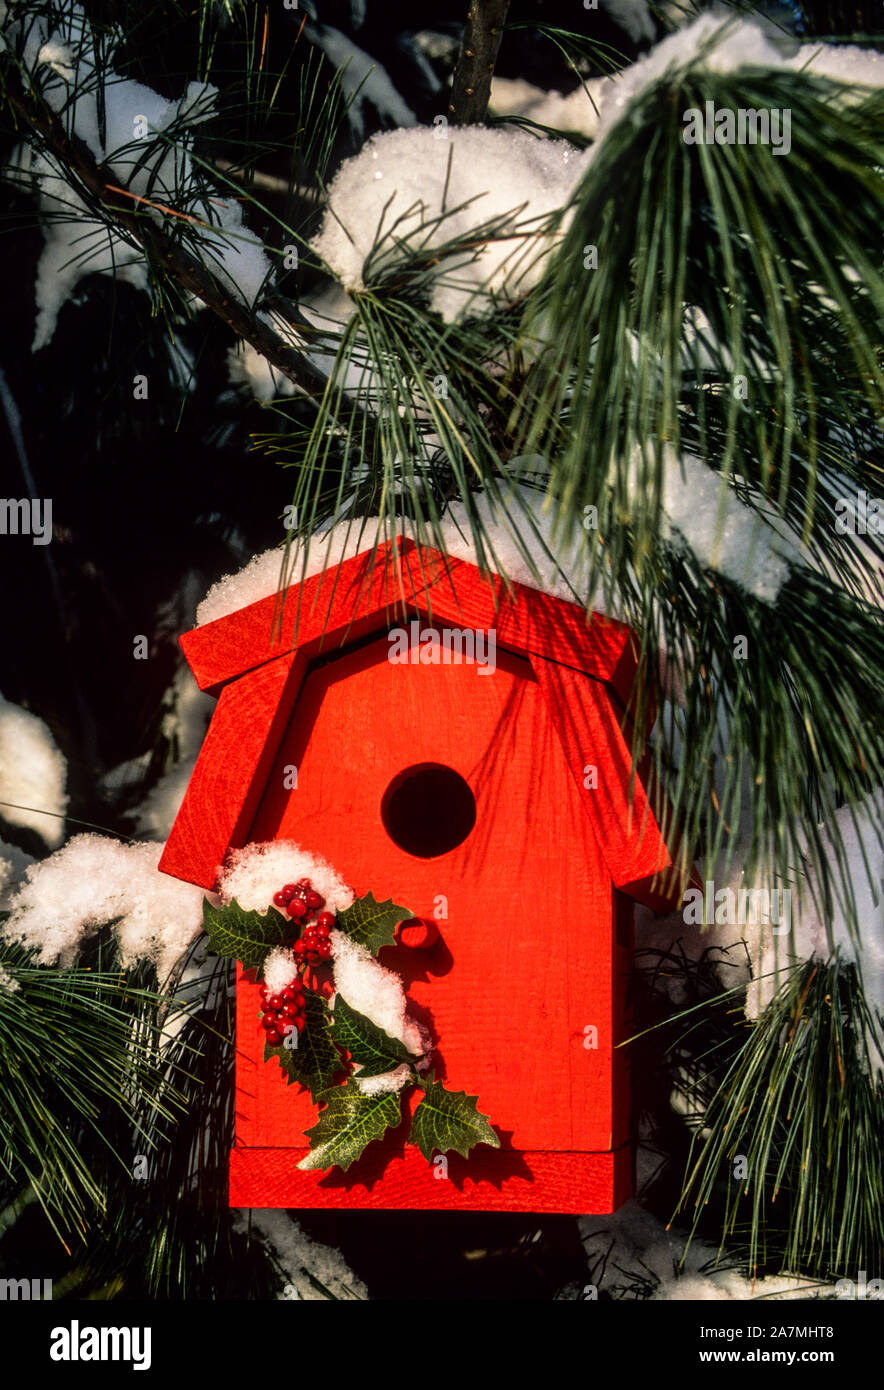 Nahaufnahme Rotbarn Vogelhaus, Schnee auf immergrünen, Monroe Twp., NJ New Jersey, USA, US, Vogelhaus Schnee Sturm Nistkästen Bauernhof Garten vertikal Stockfoto